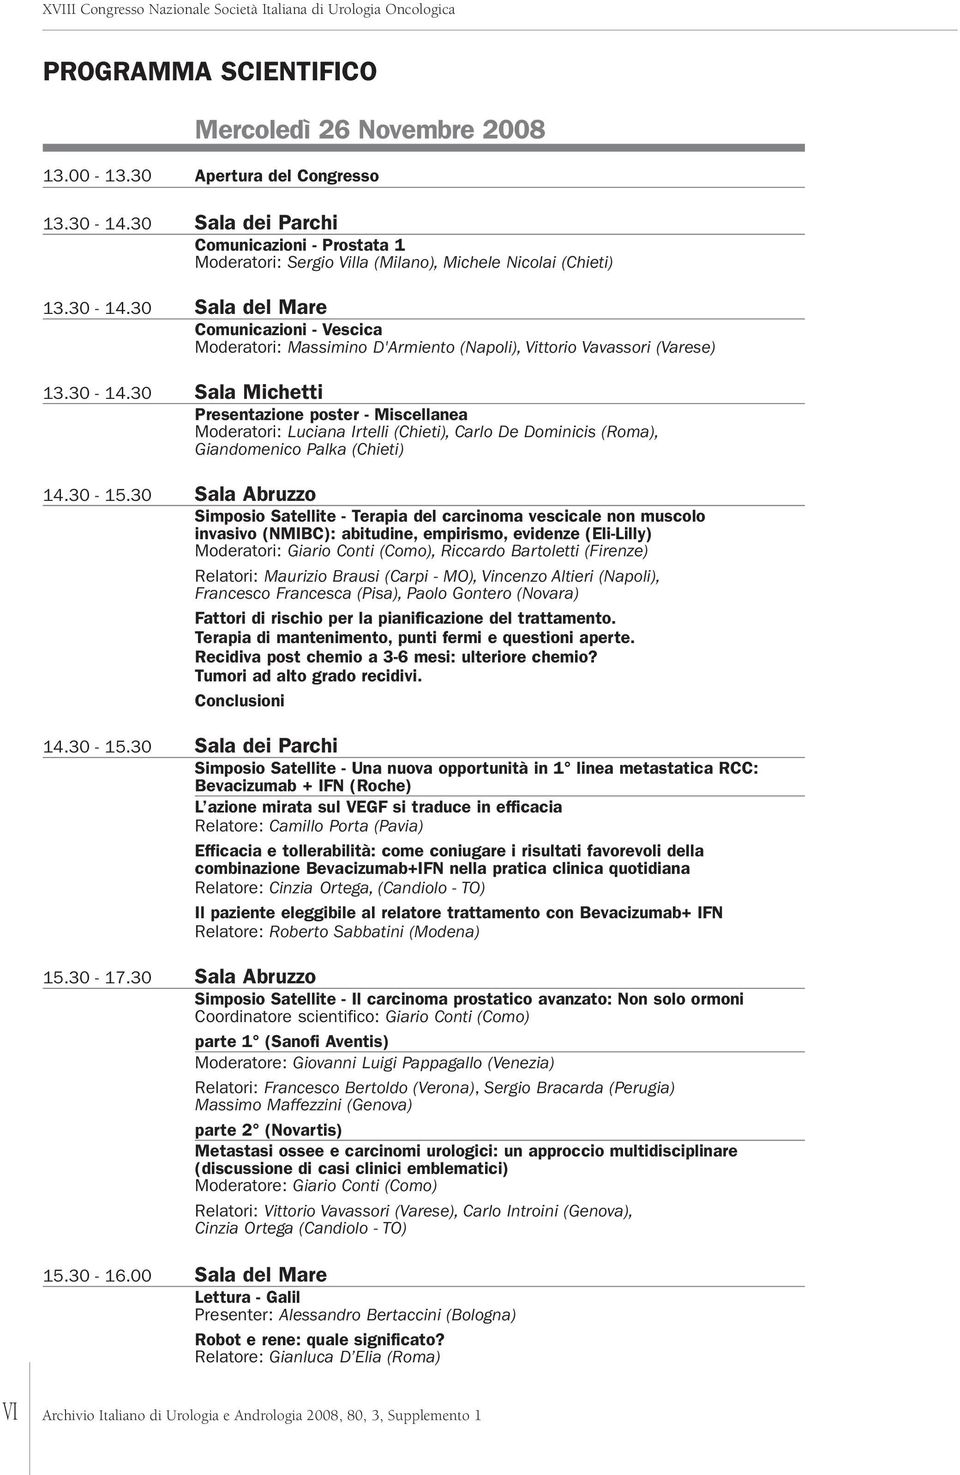 30 Sala del Mare Comunicazioni - Vescica Moderatori: Massimino D'Armiento (Napoli), Vittorio Vavassori (Varese) 3.30-4.